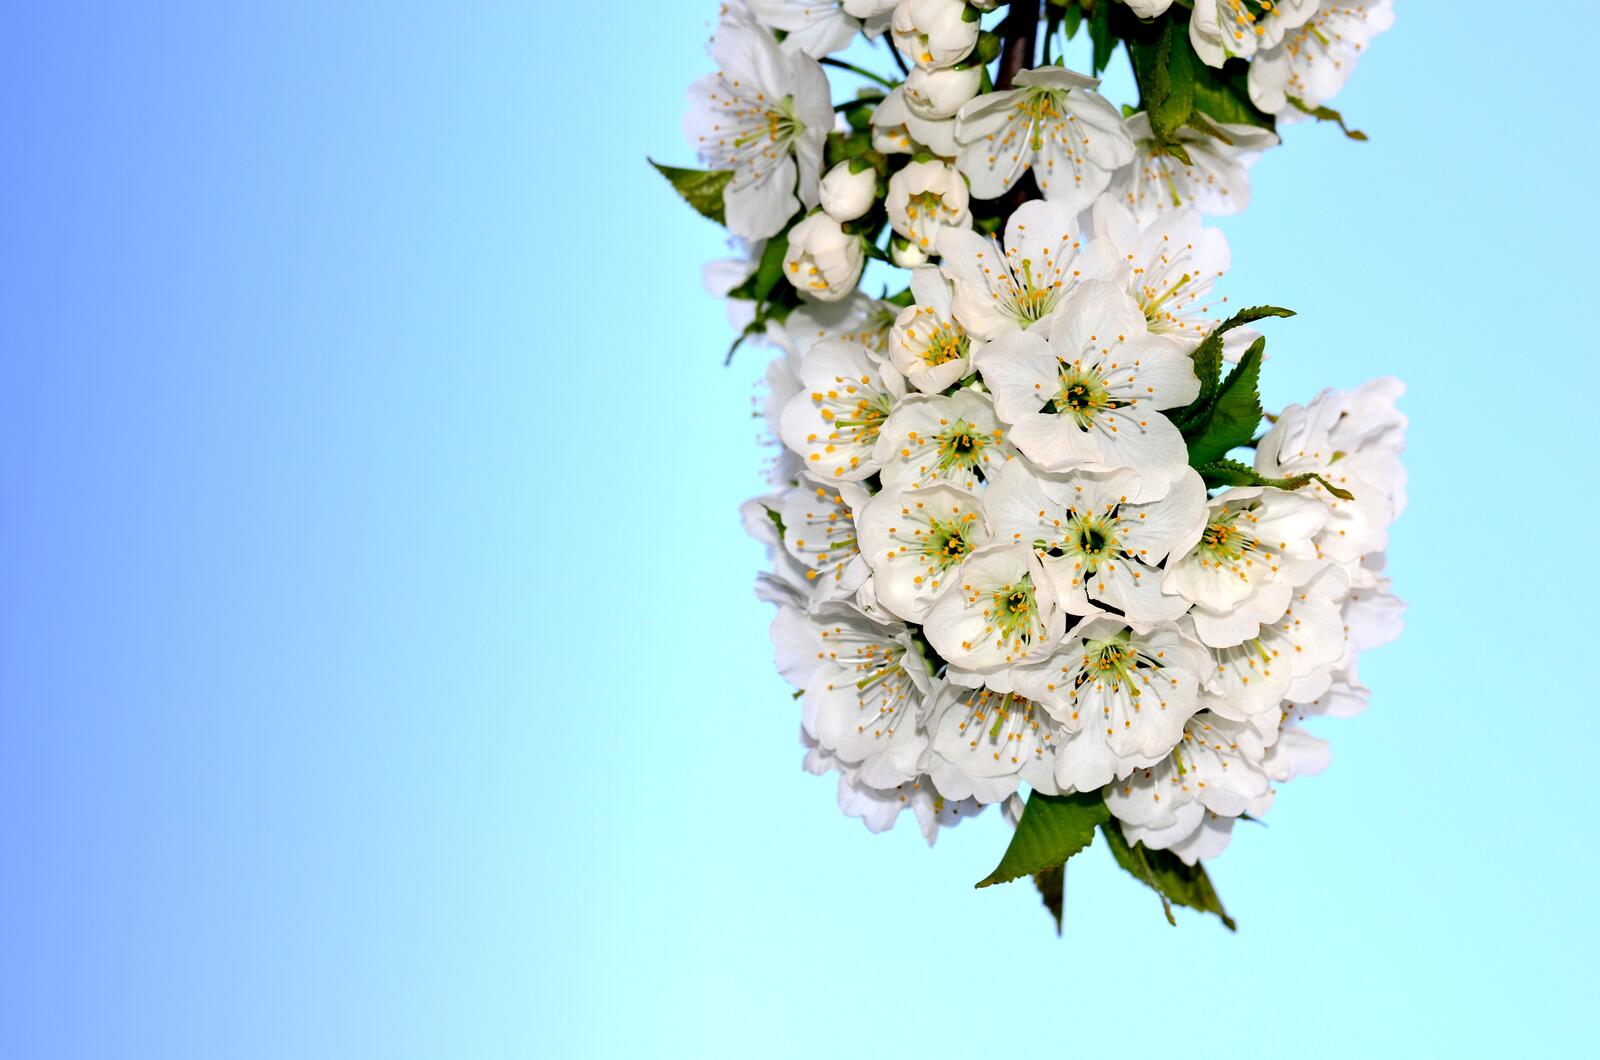 Бесплатное фото Веточка с белыми цветами цветущей вишни